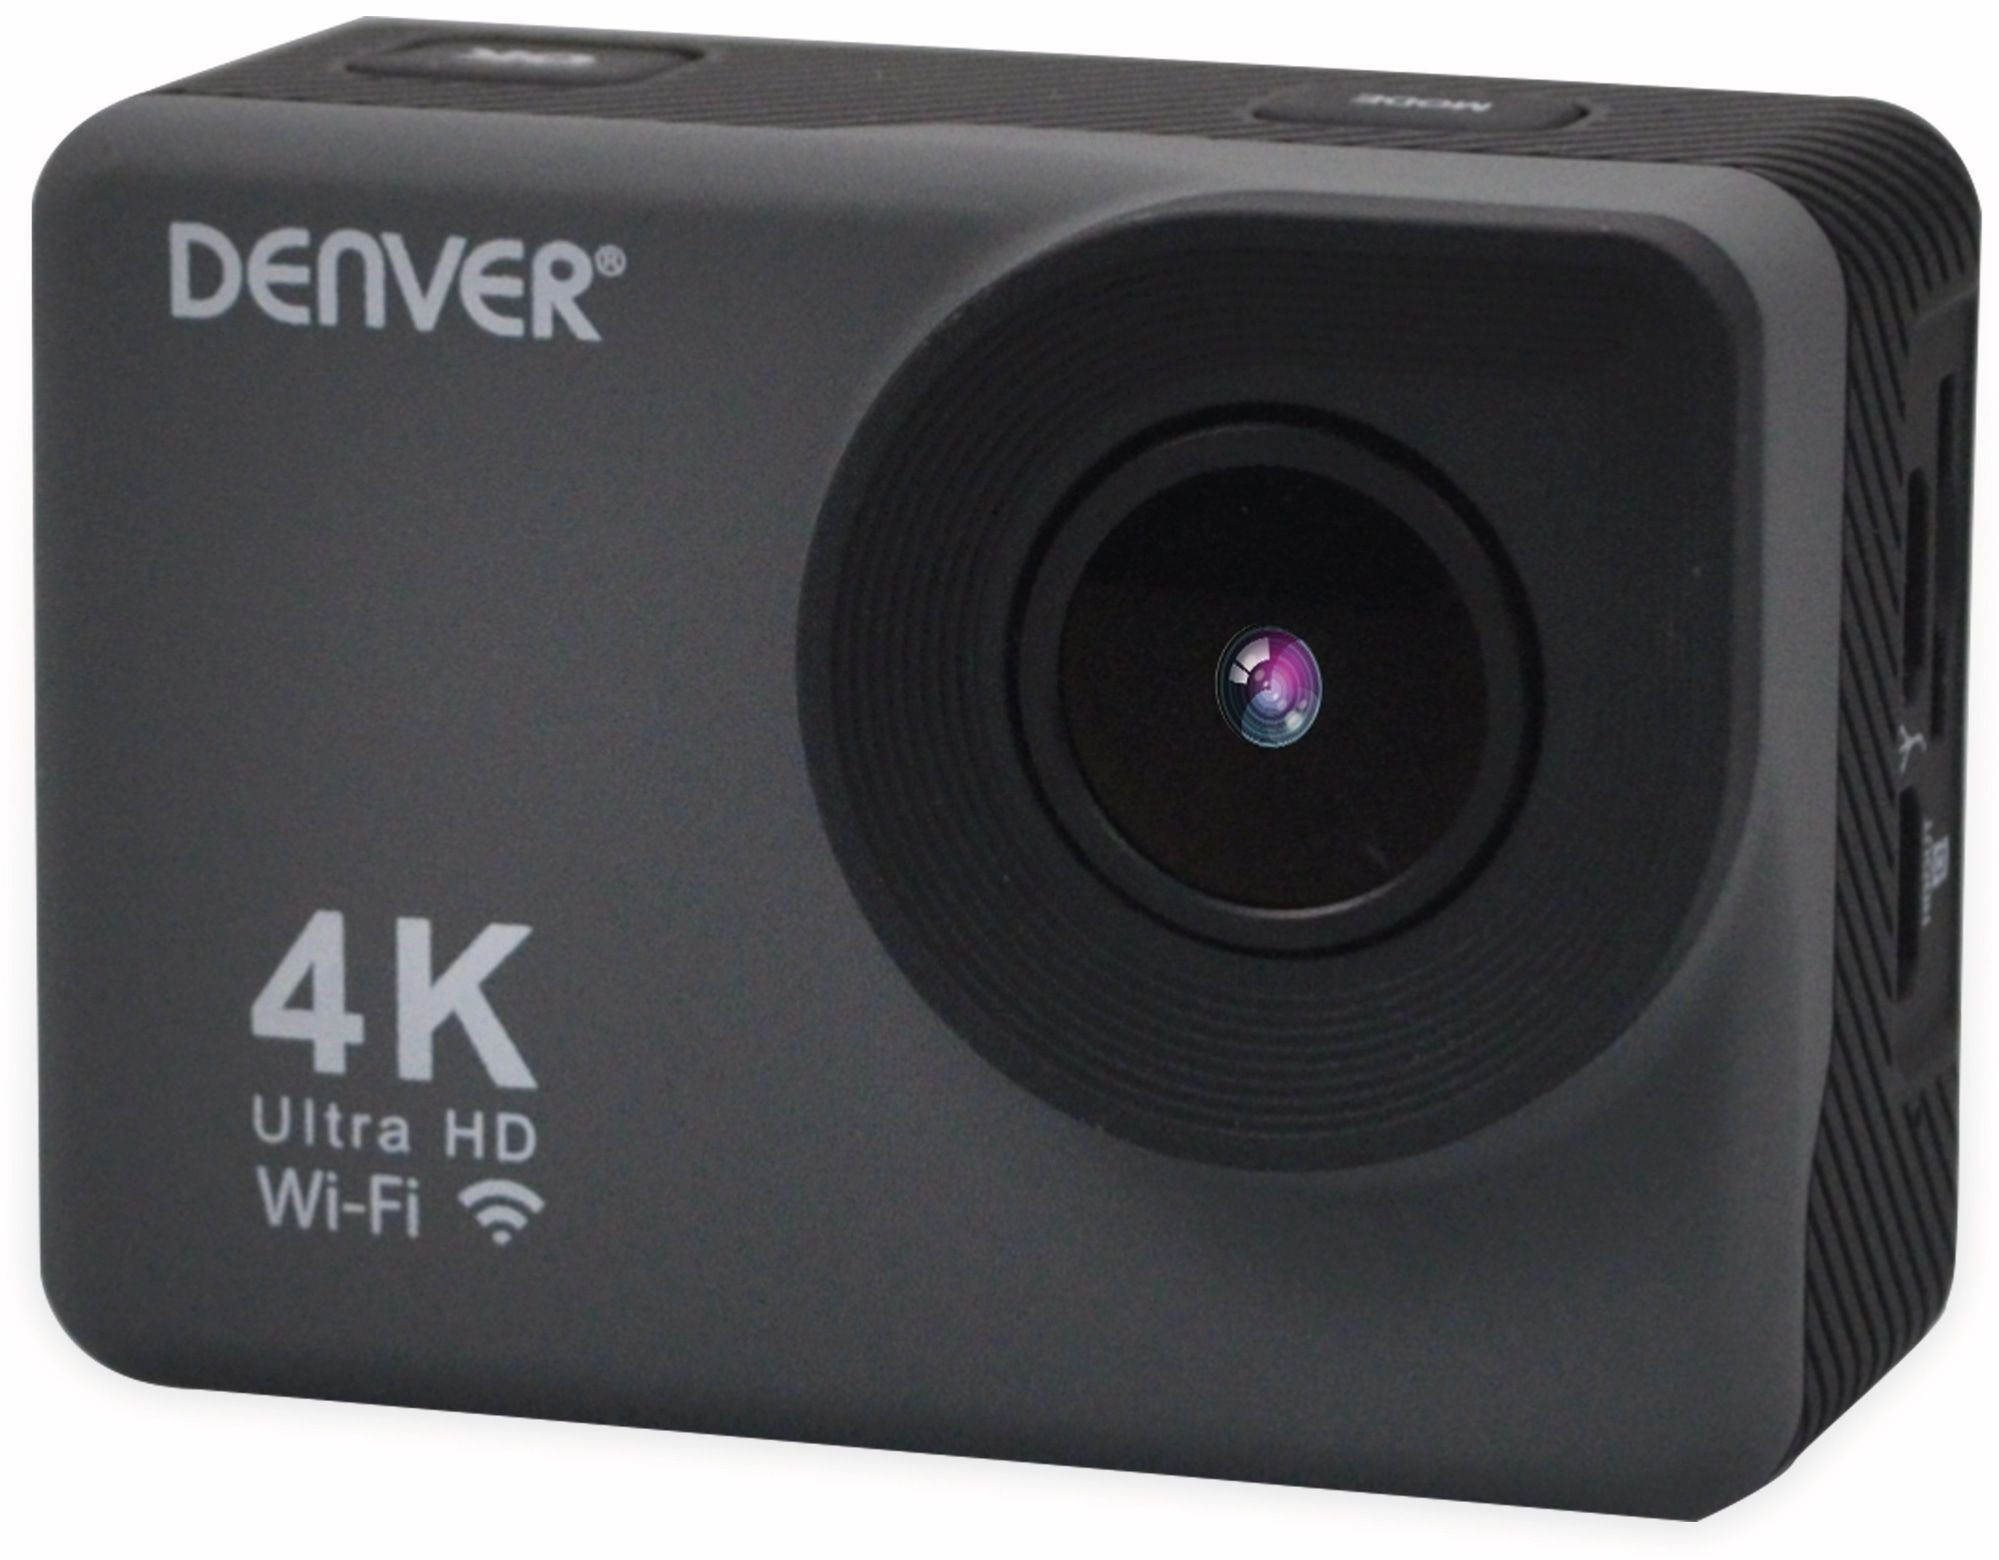 ACK-8062W, Actioncam Denver 4K DENVER Videokamera